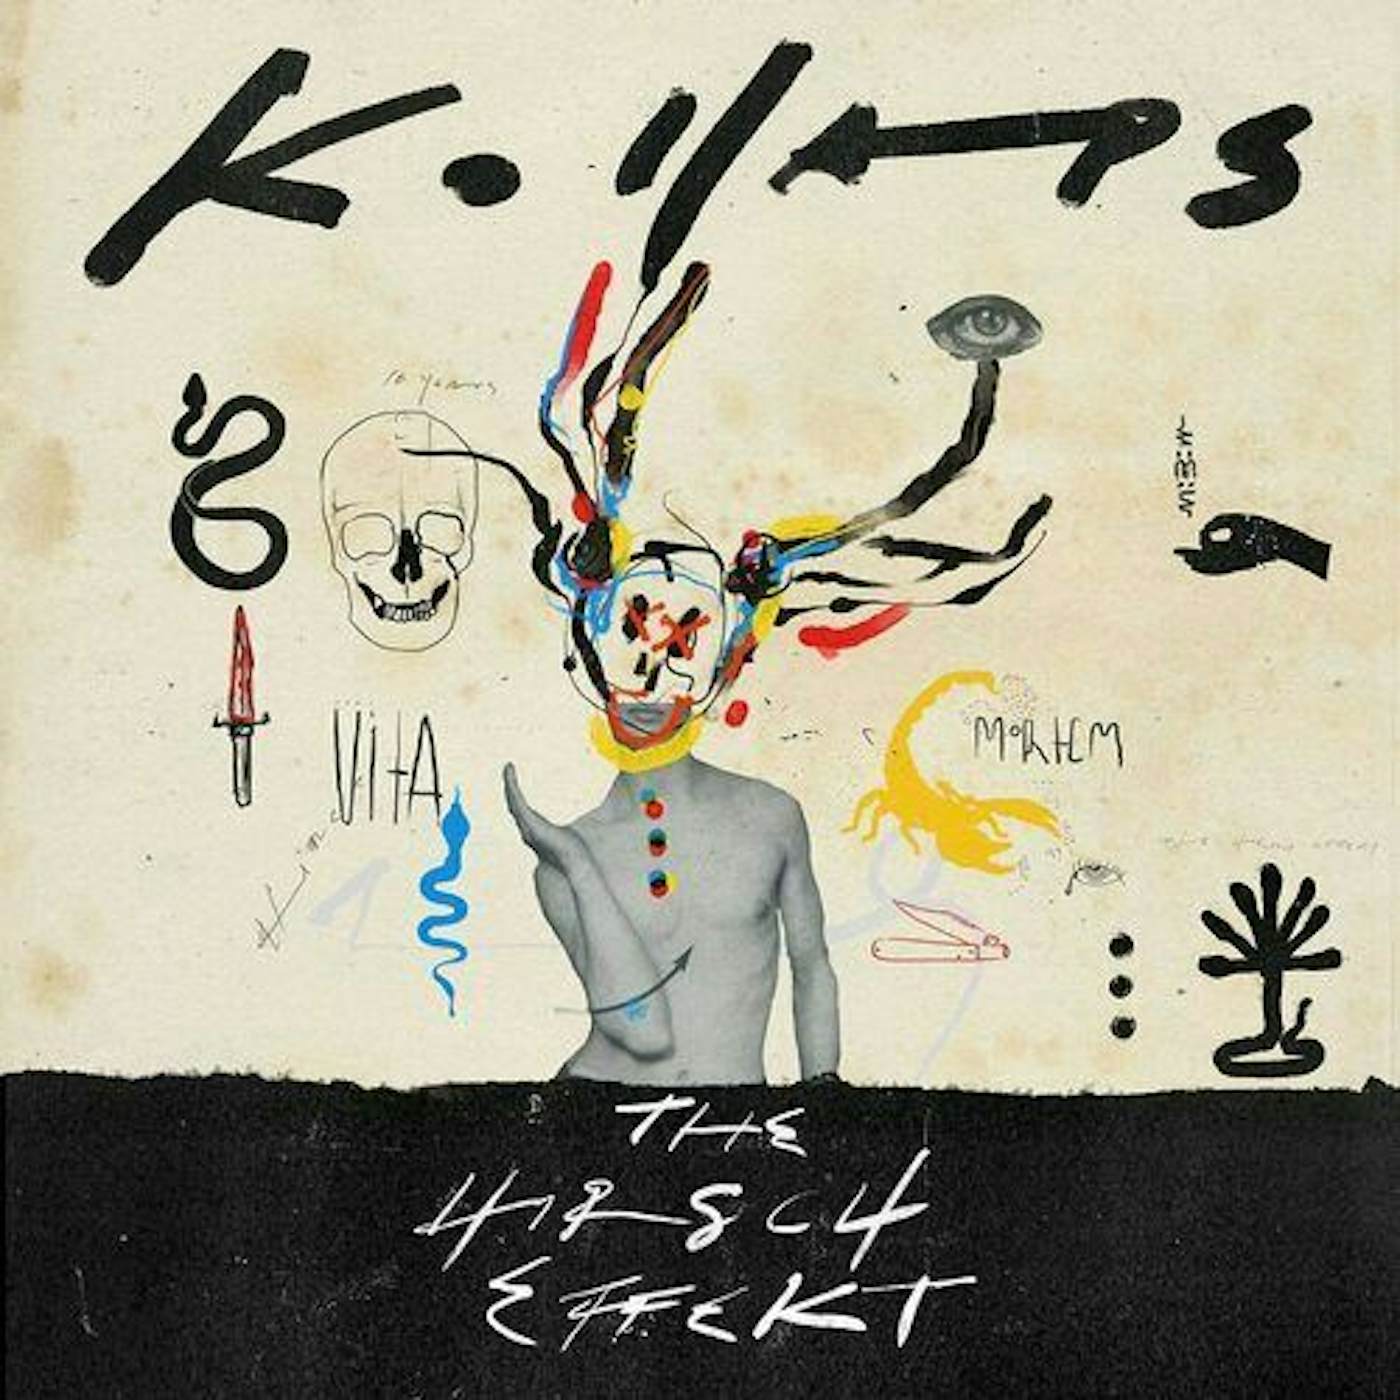 The Hirsch Effekt Kollaps Vinyl Record